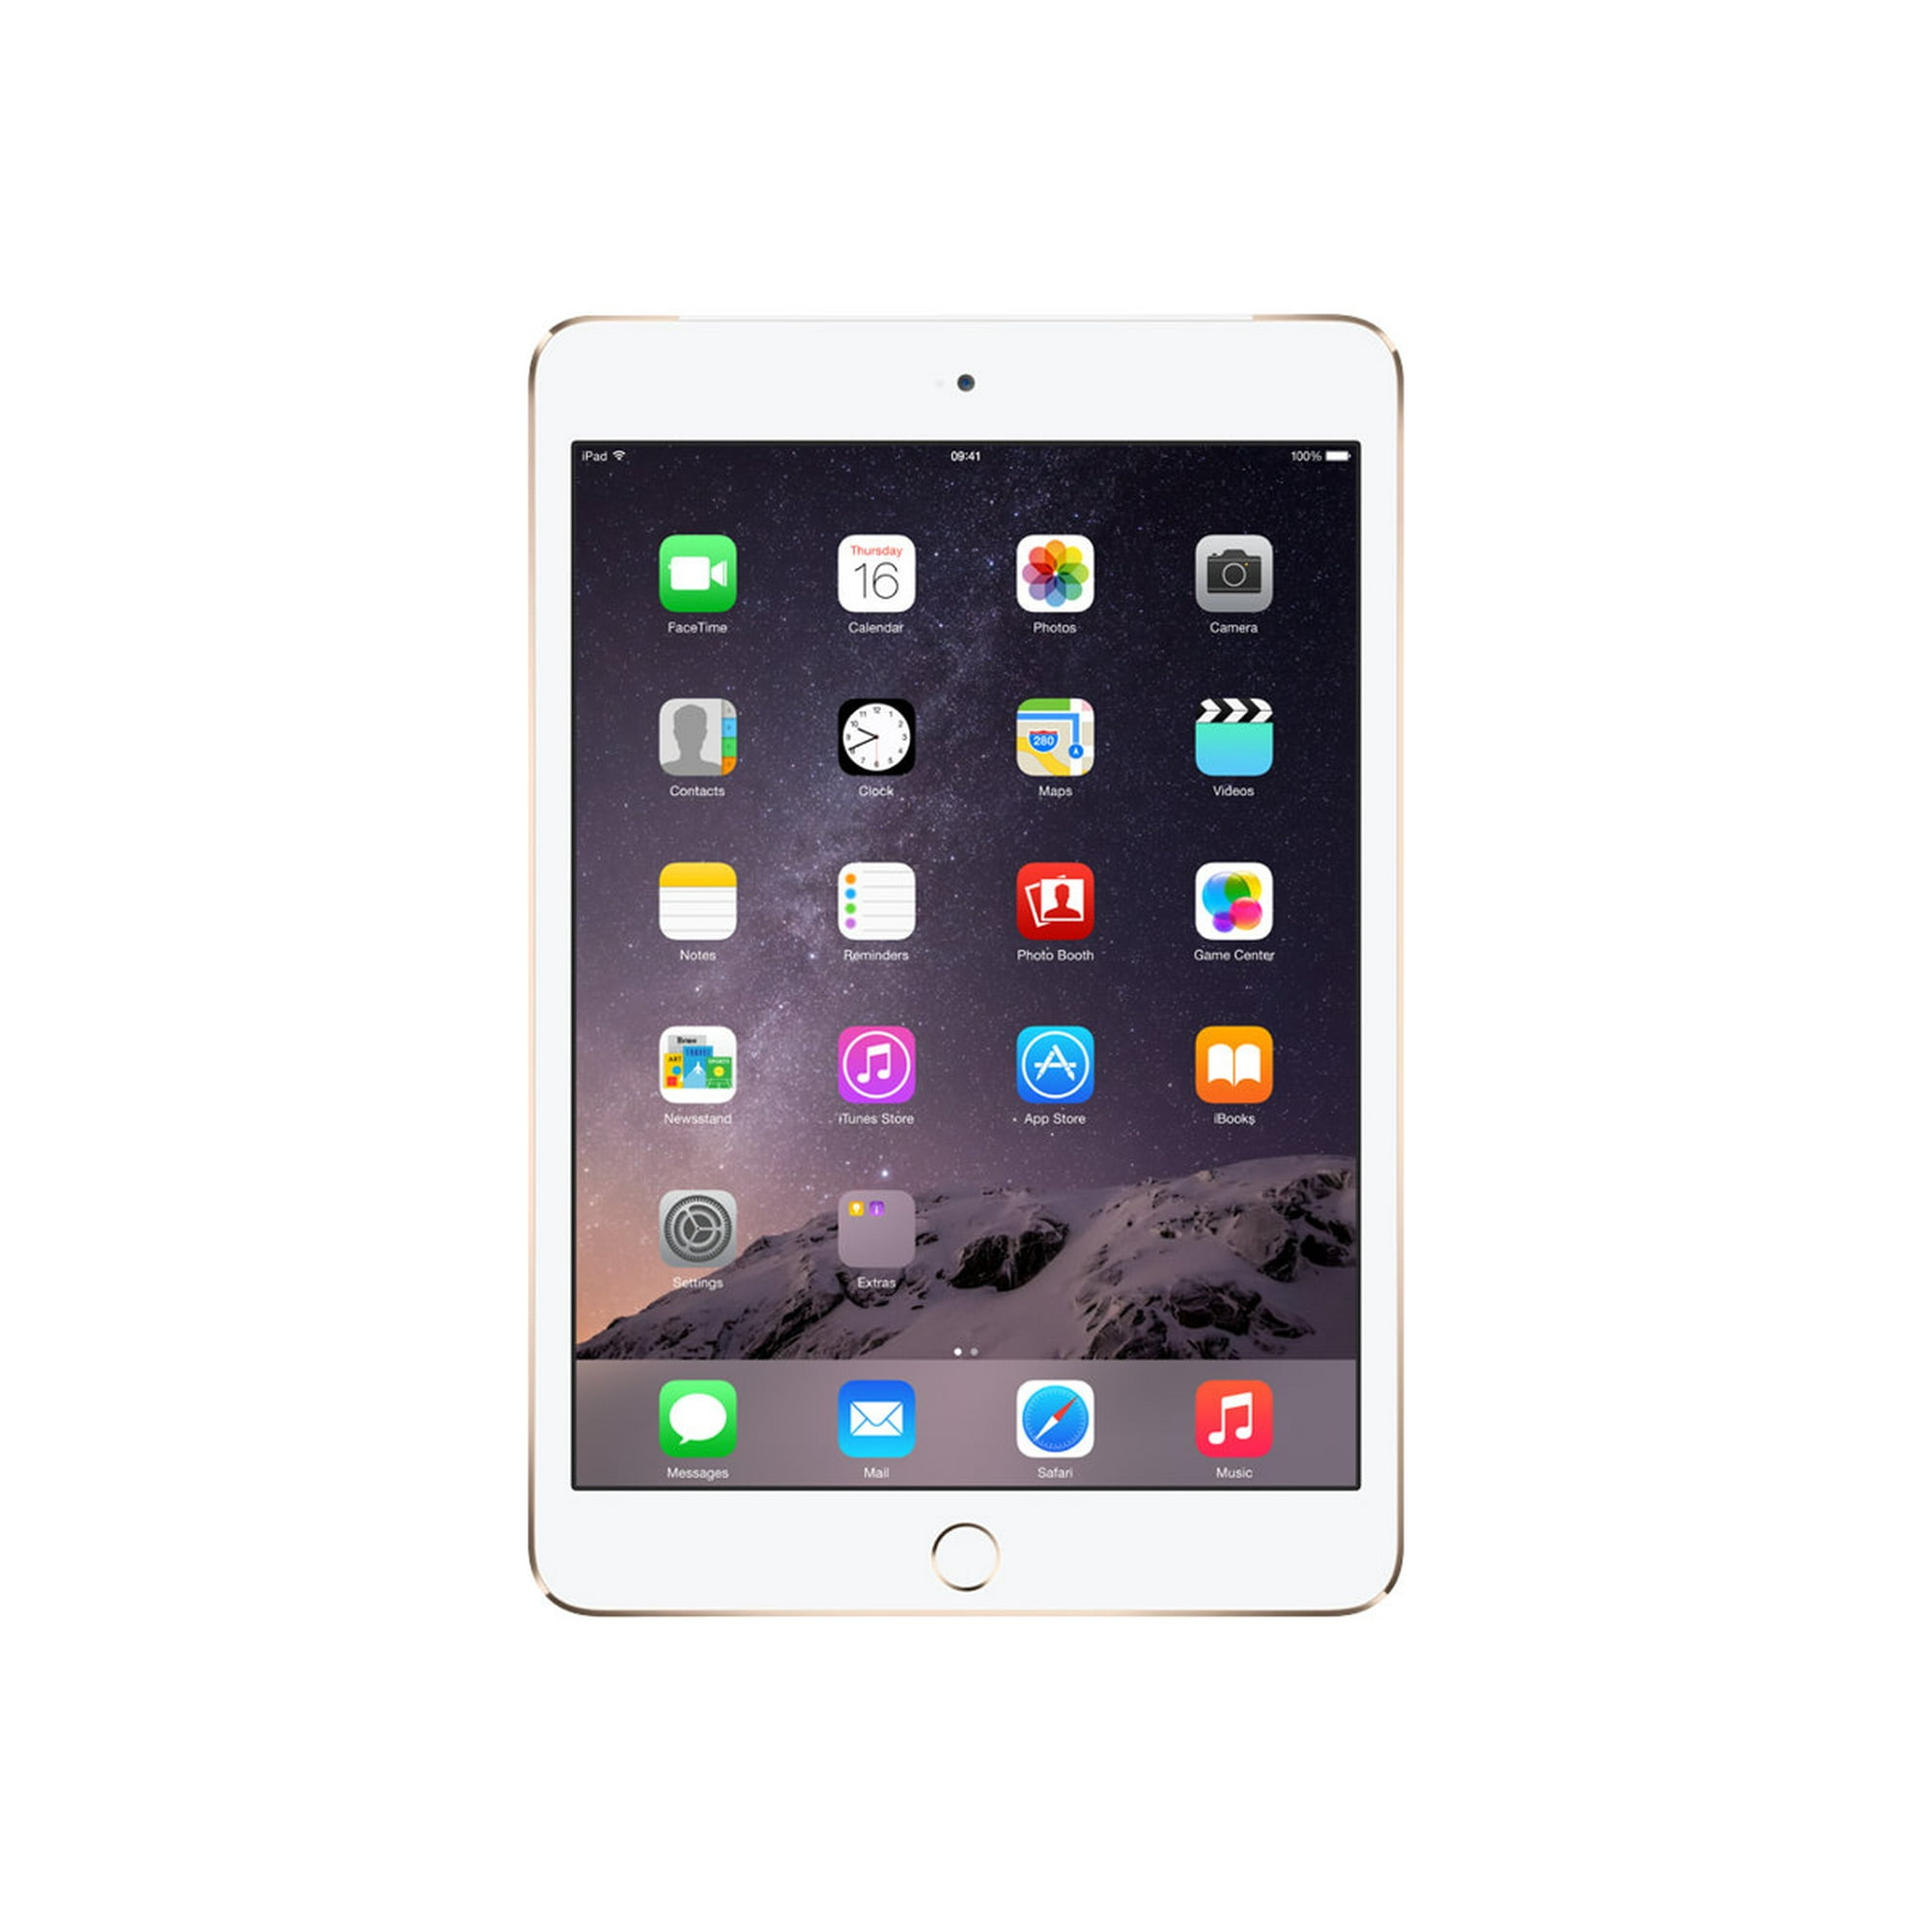 Apple iPad mini 4 Wi-Fi + Cellular - 4th generation - tablet - 64 GB - 7.9